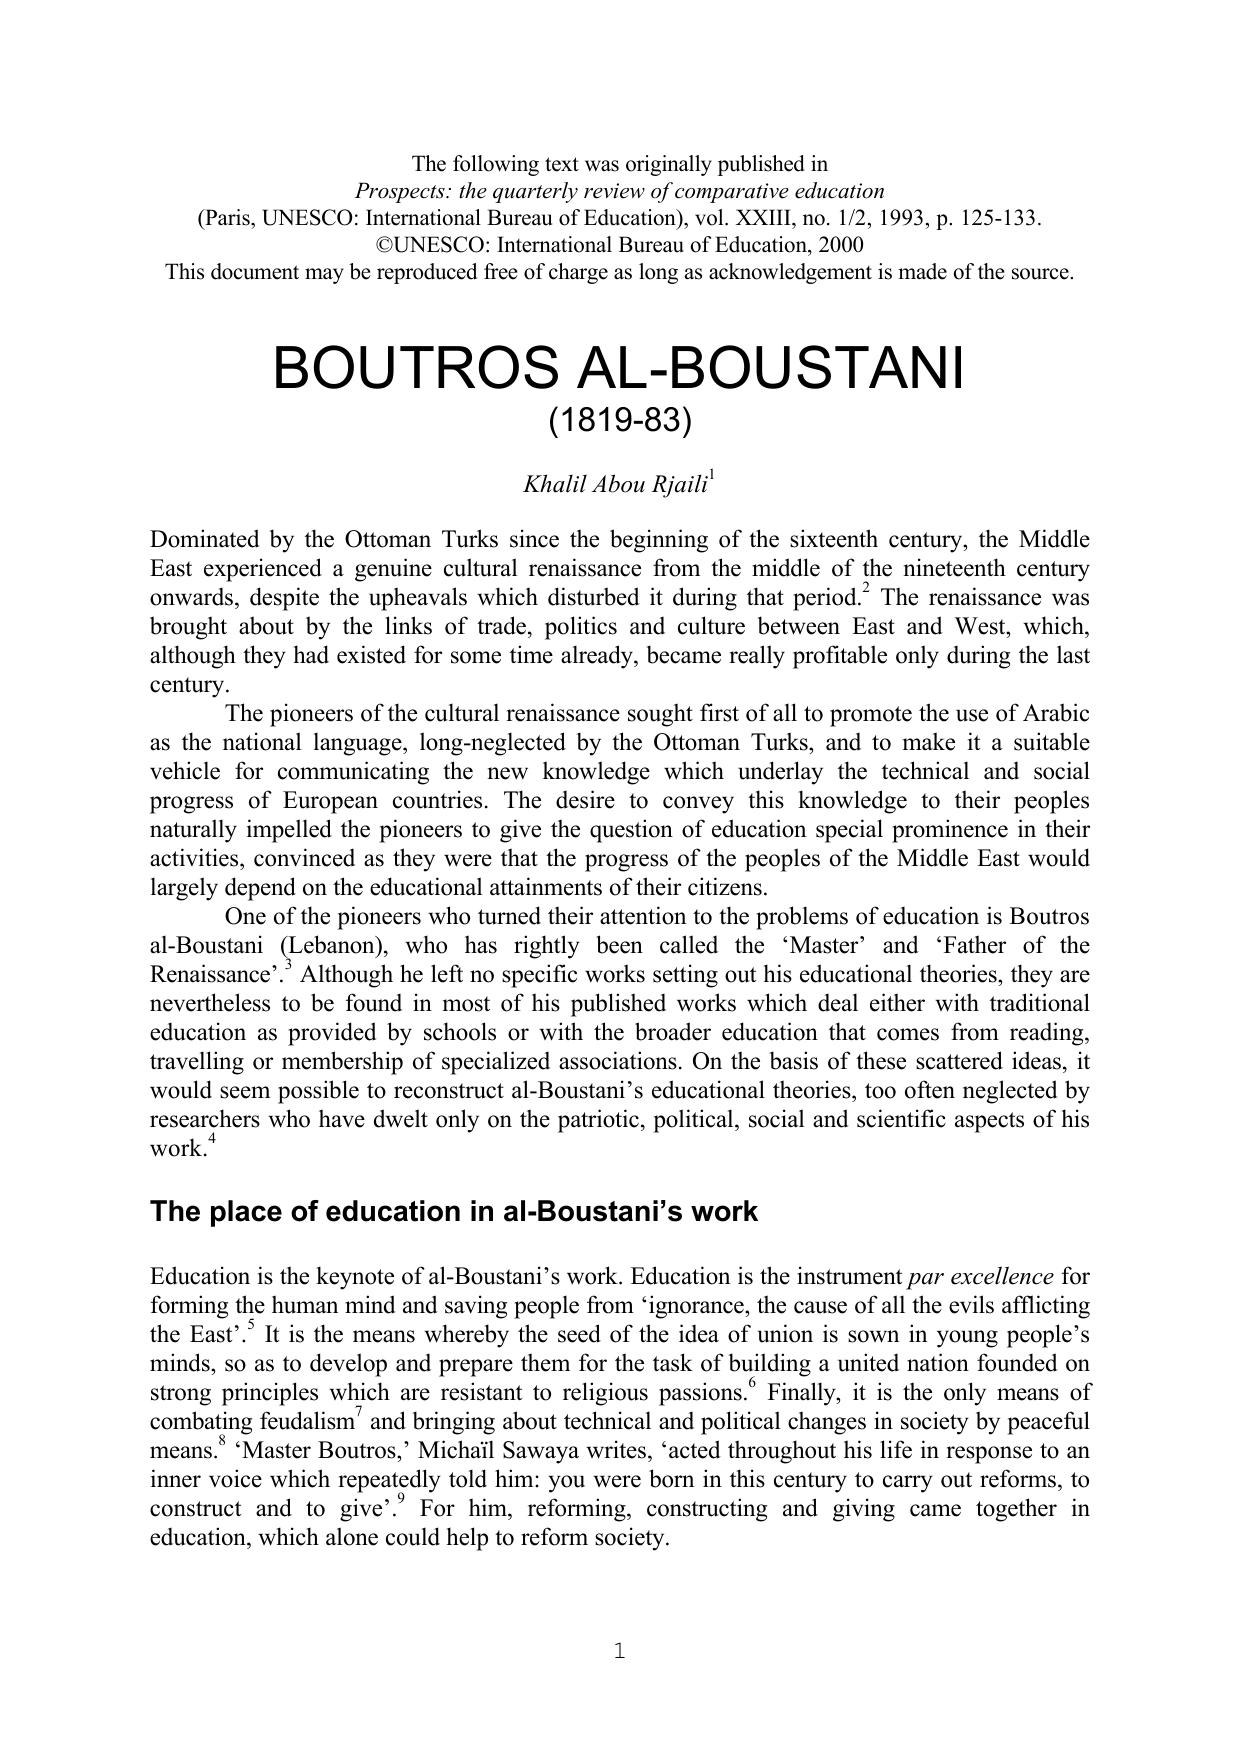 Khalil Abou Rjaili Boutros al- Boustani